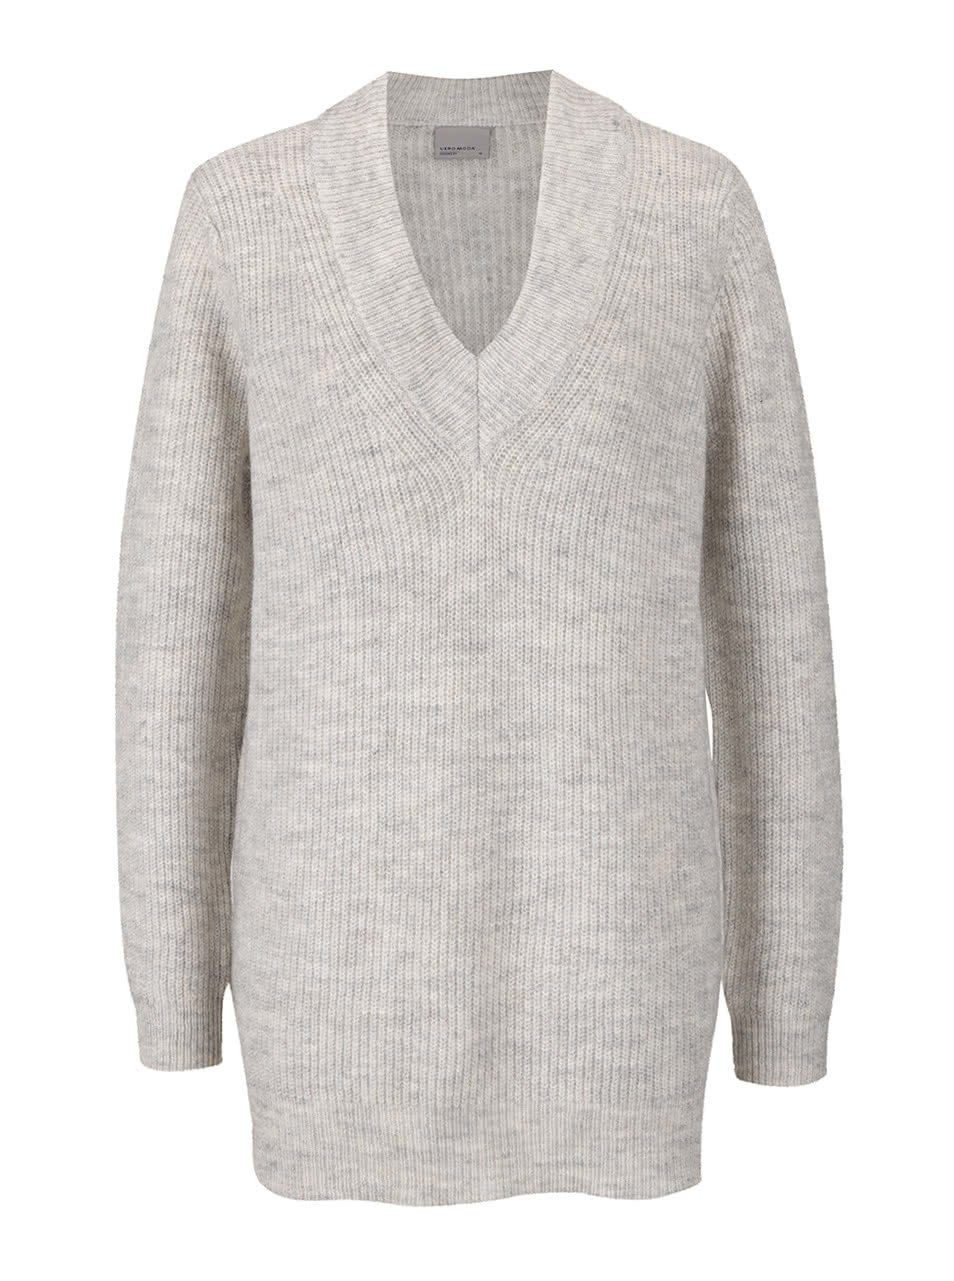 Krémový žíhaný svetr s véčkovým výstřihem Vero Moda Miriam